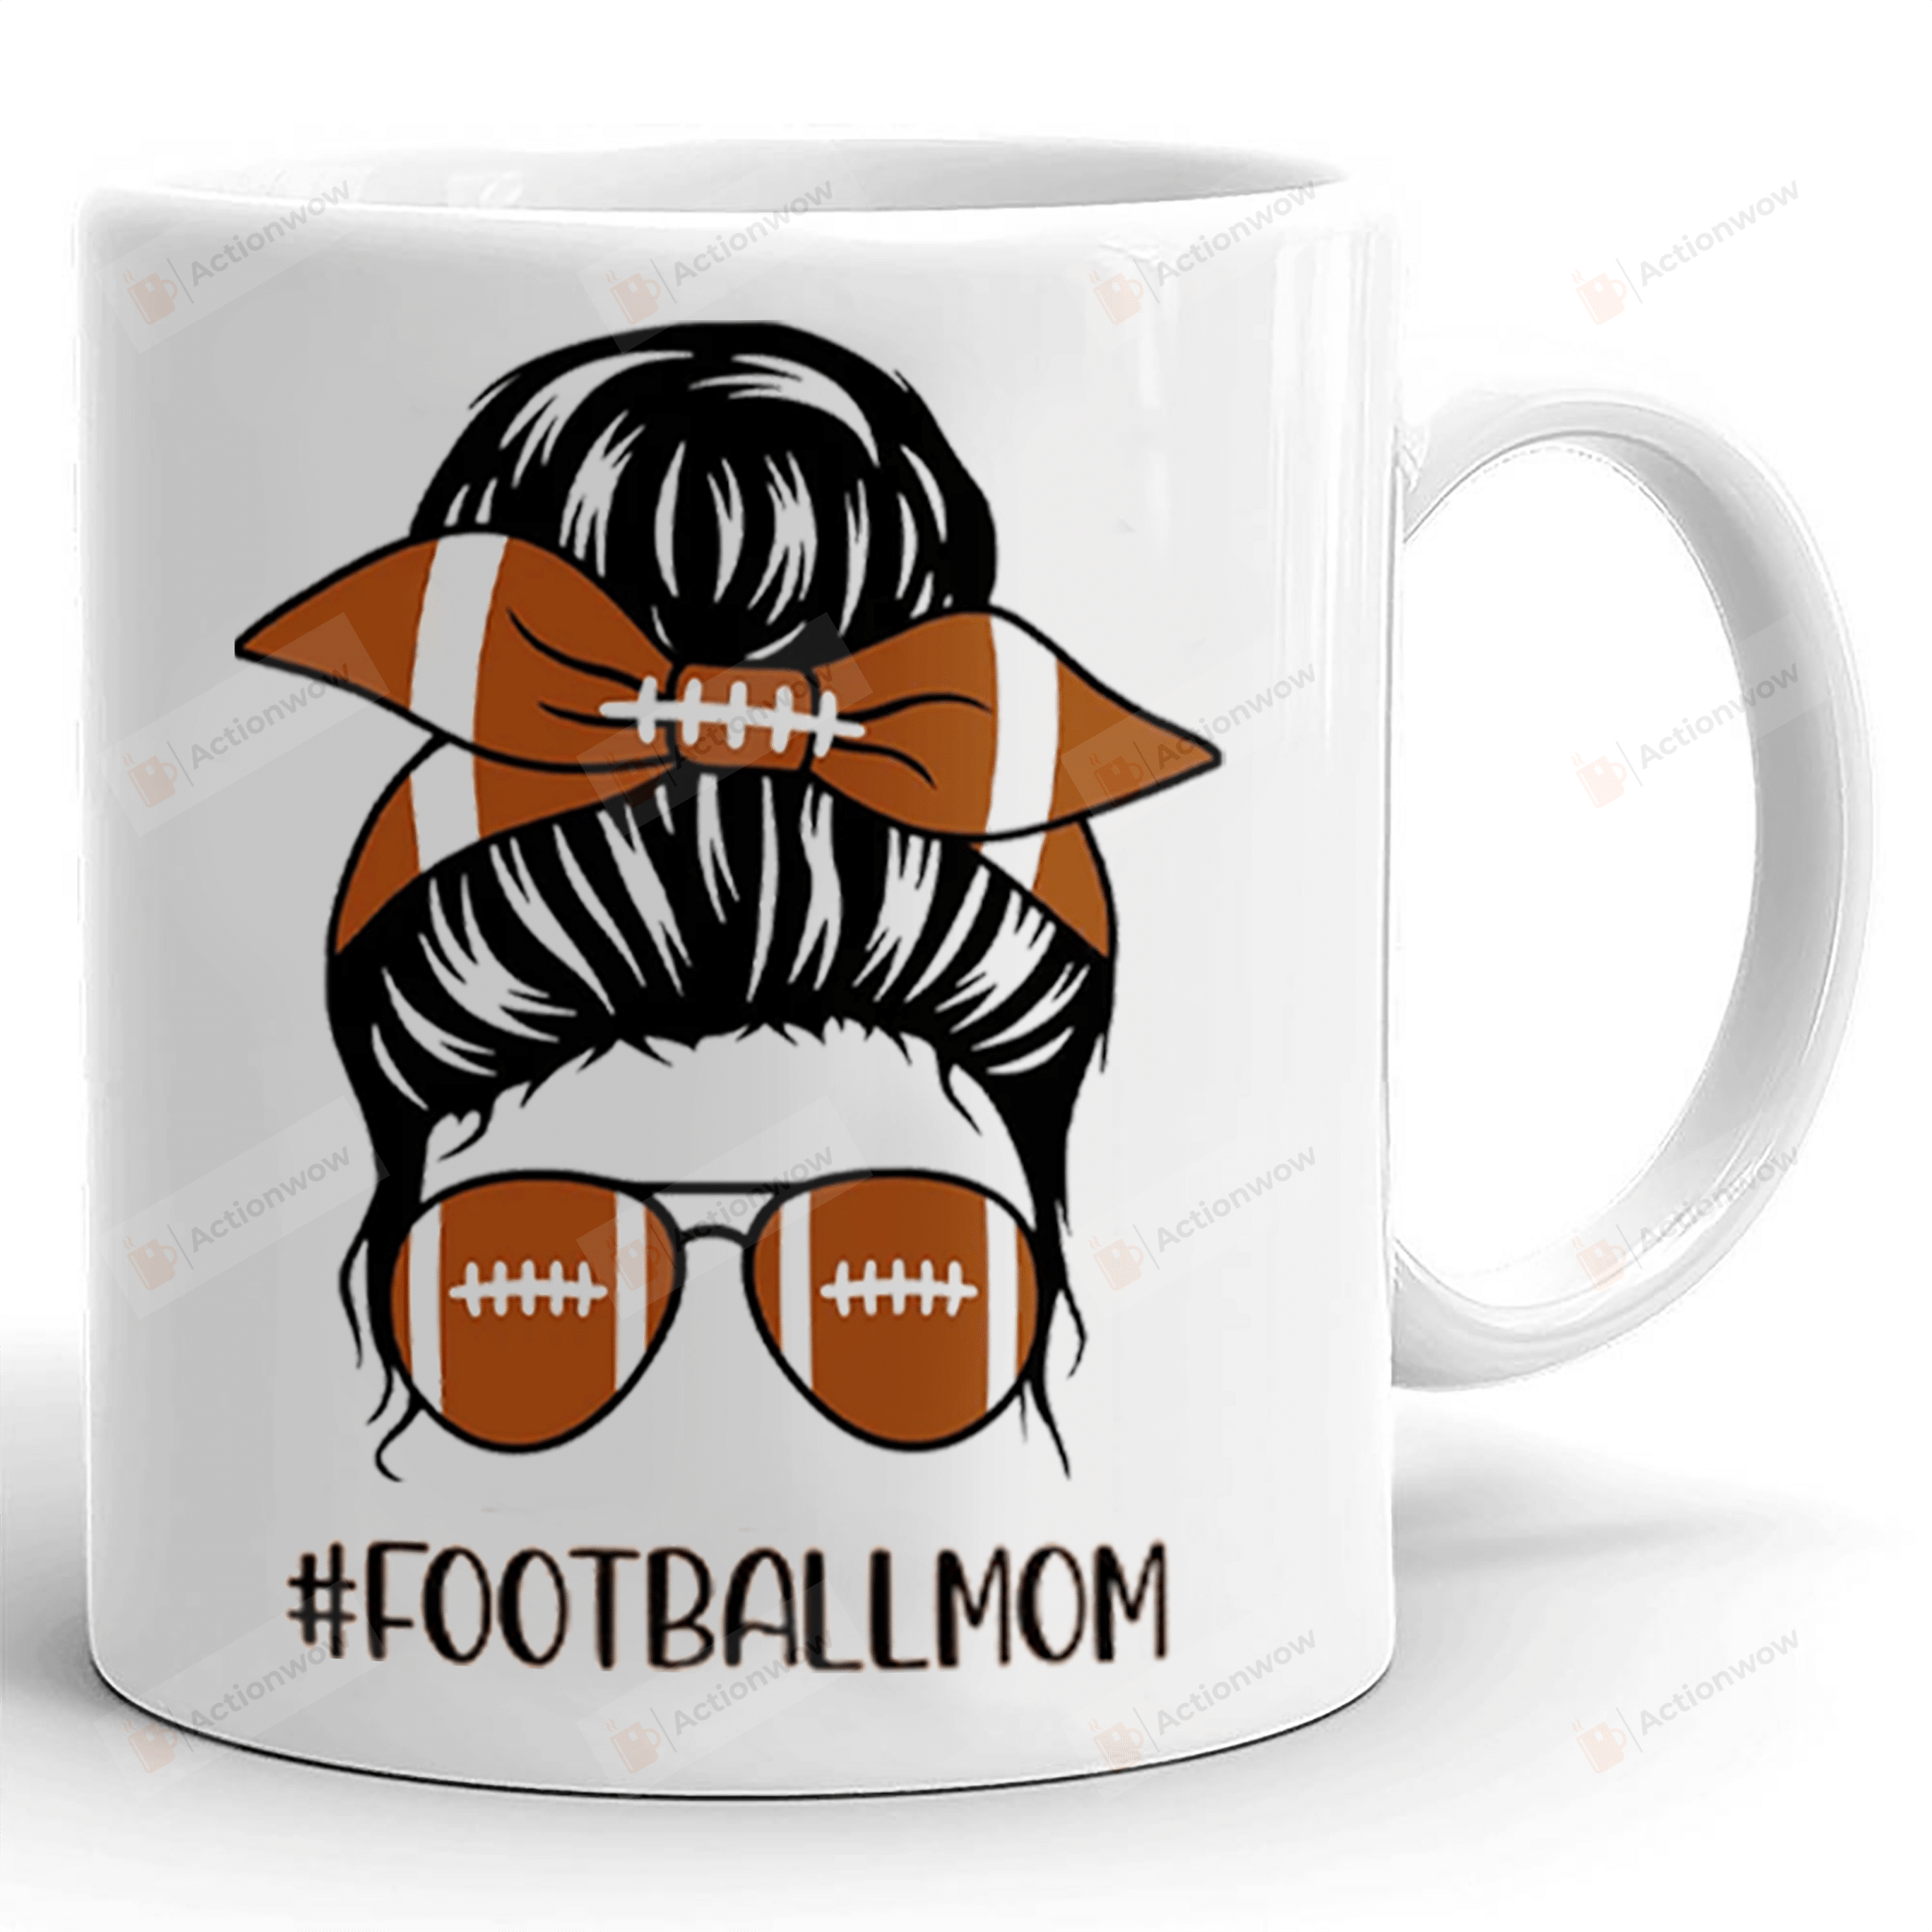 Football Mom Coffee Mug, Game Day Vibes Mug, Football Mug, Sports Mom Mug, Mama Mug, Gifts For Mom